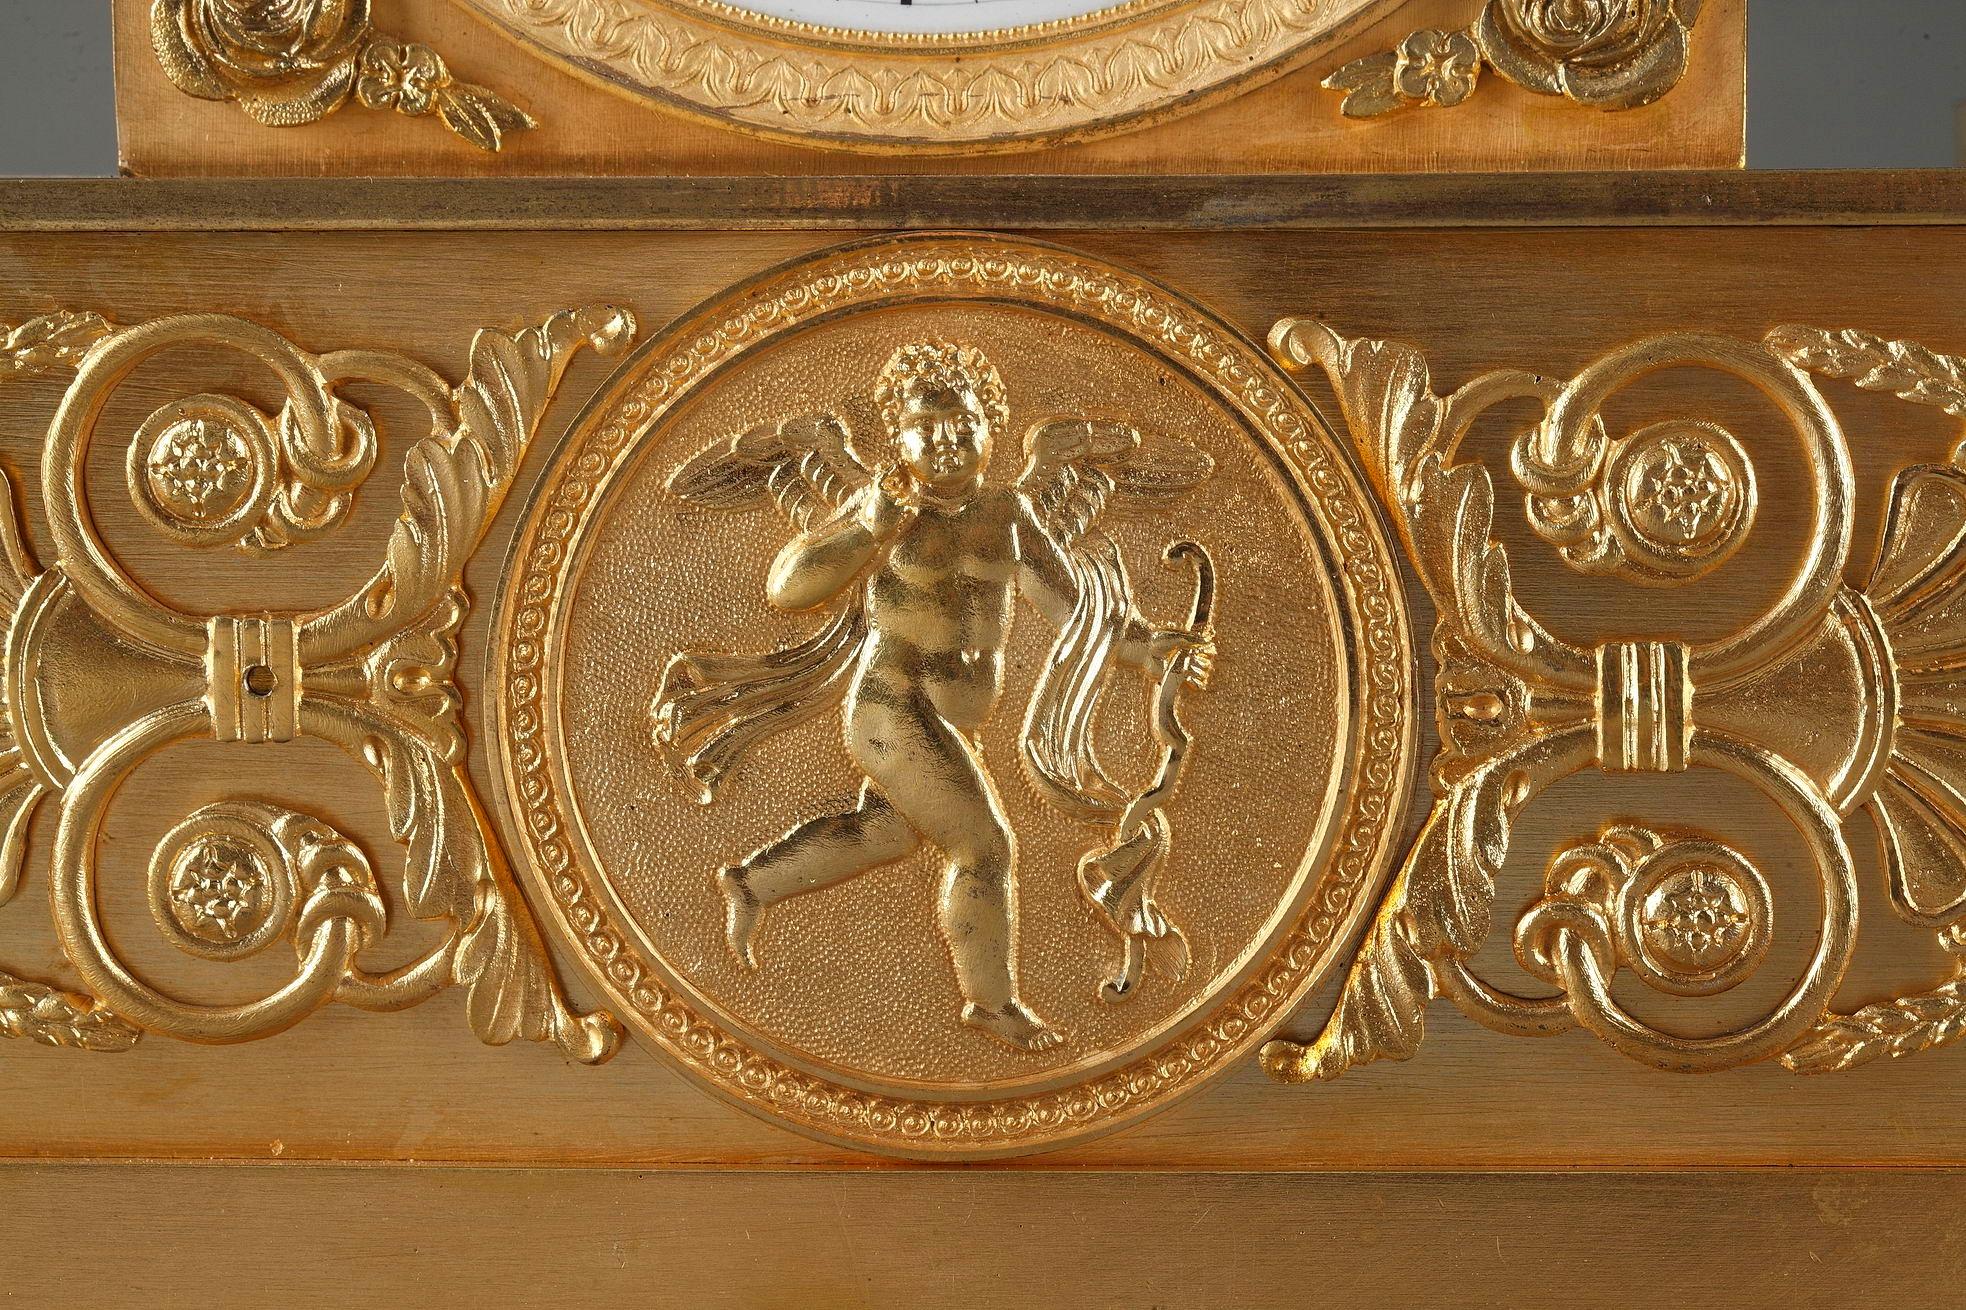 Französische Empire-Pendeluhr aus vergoldeter Bronze, mit einer jungen Spinnerin in klassischem Kleid, die auf dem Zifferblatt neben einer Lyra und einer Ewer sitzt. Der Sockel ist mit großzügigen Schriftrollen, Palmetten und einem zentralen